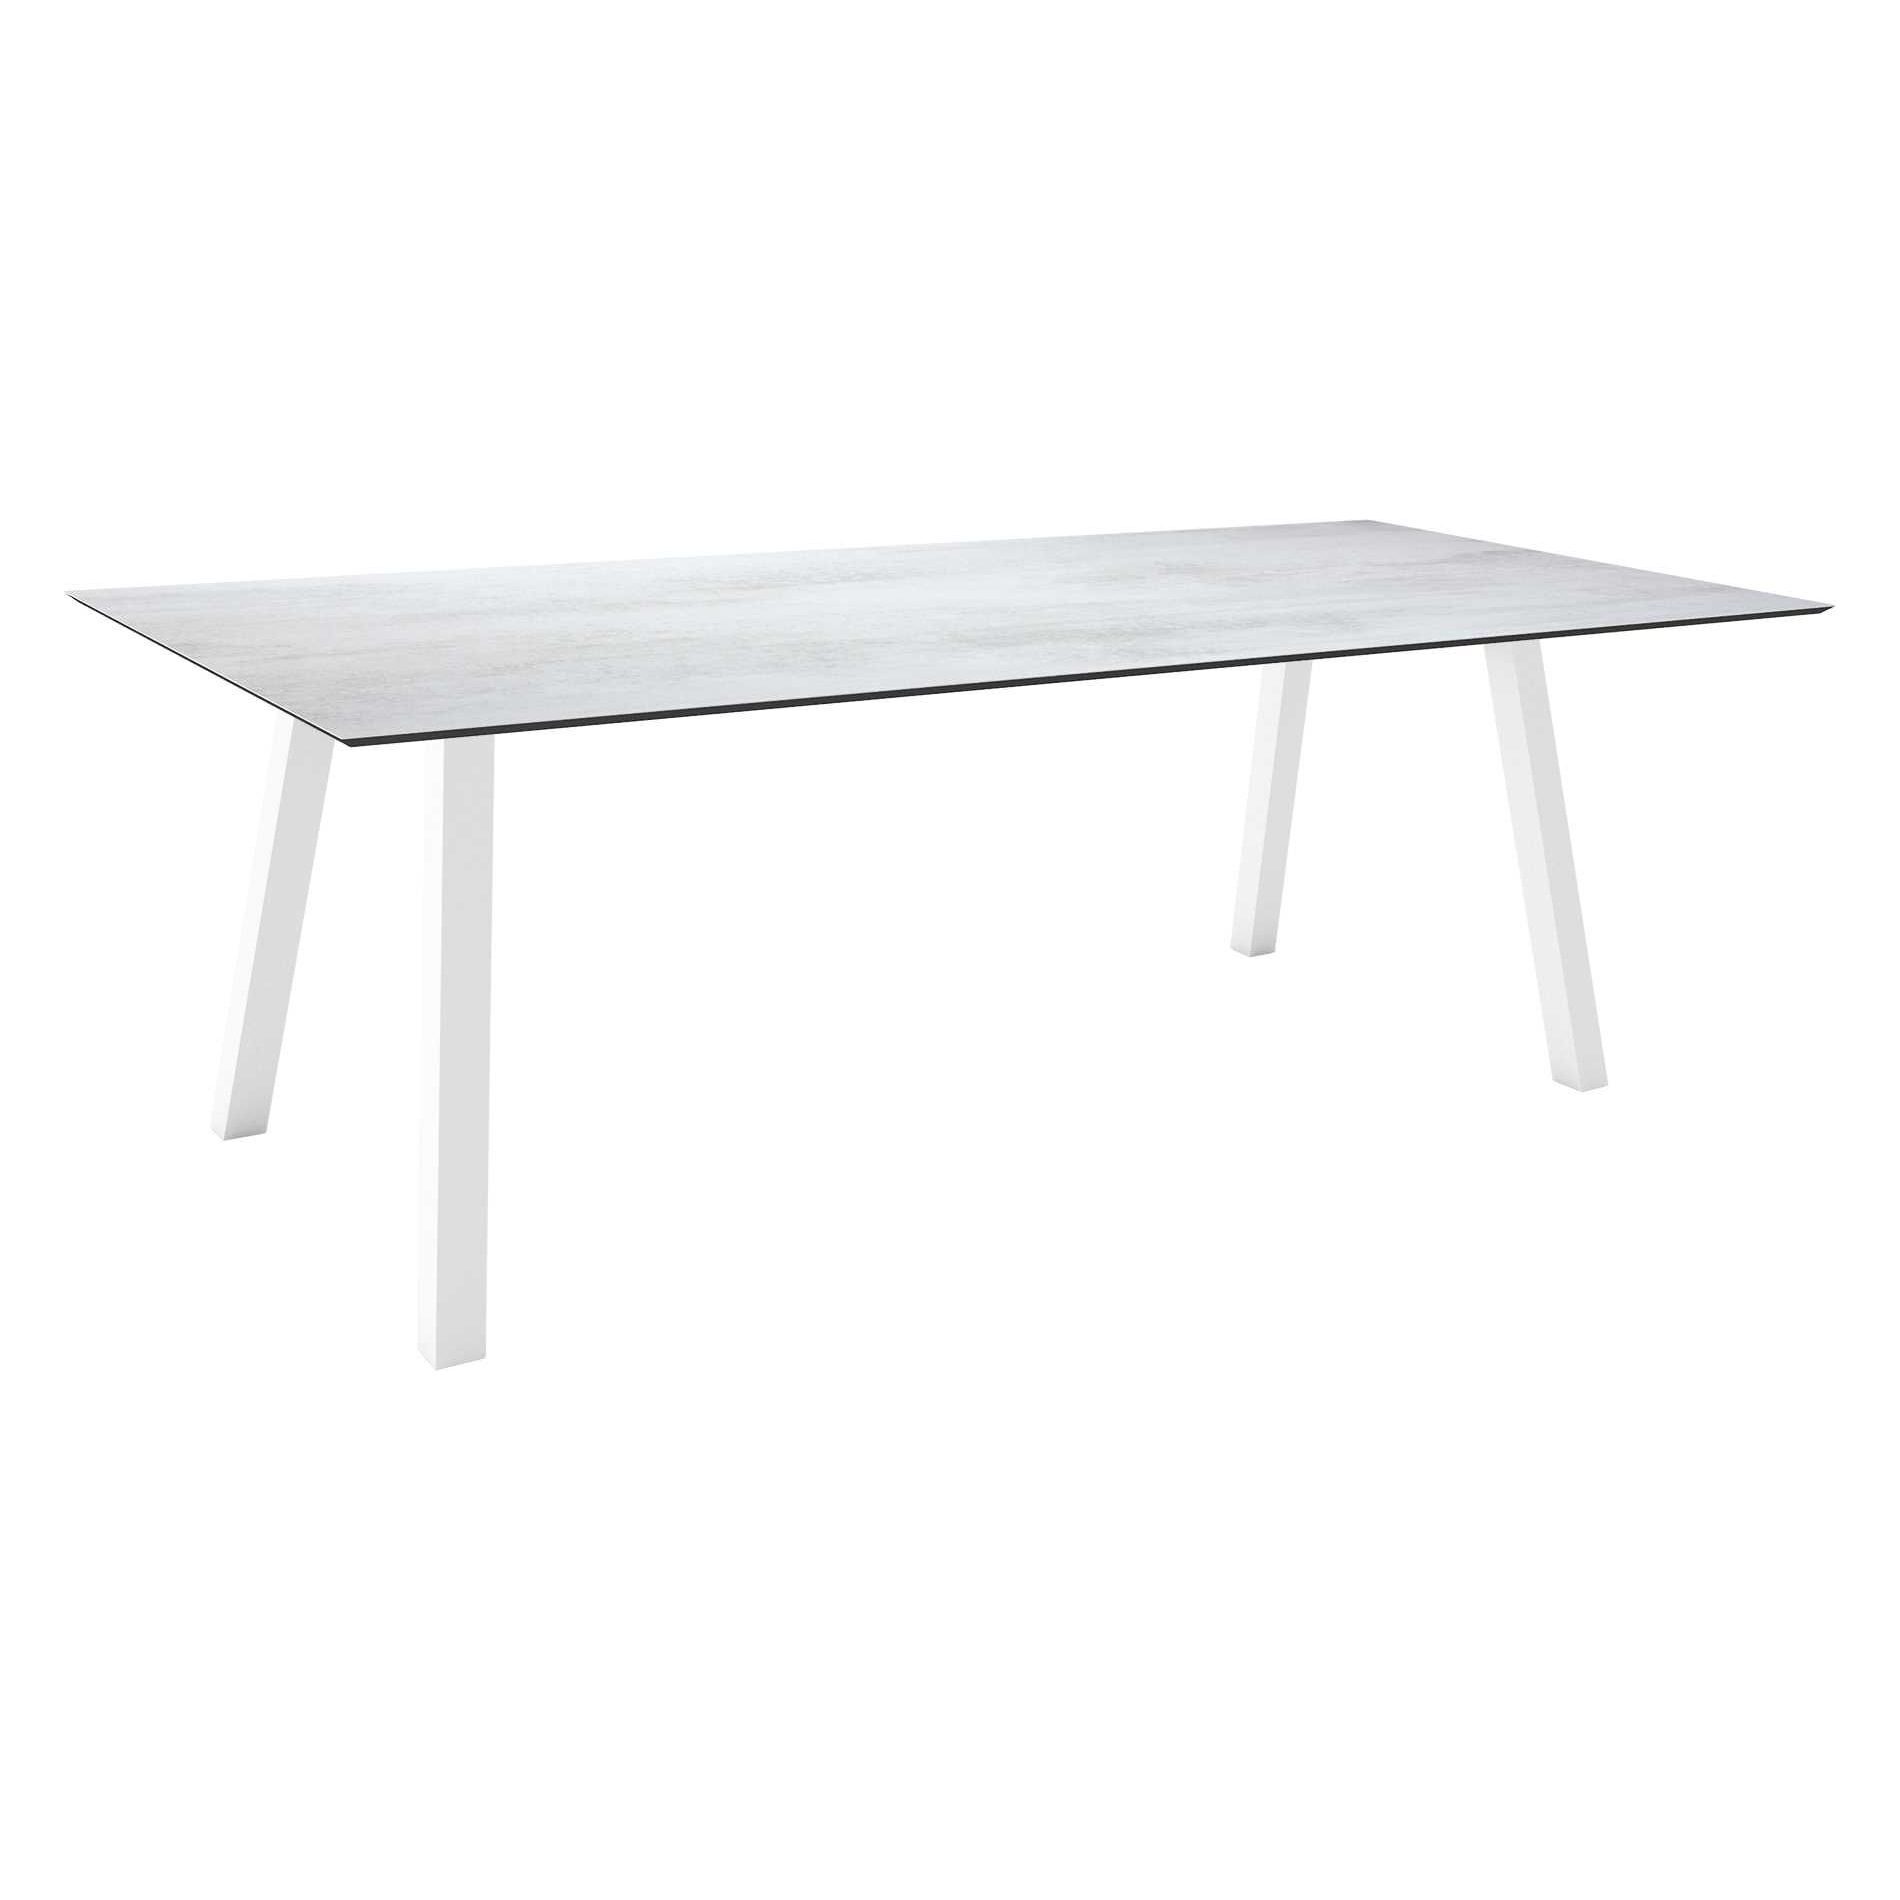 Stern Tisch "Interno", Größe 220x100cm, Alu weiß, Vierkantrohr, Tischplatte HPL Zement hell